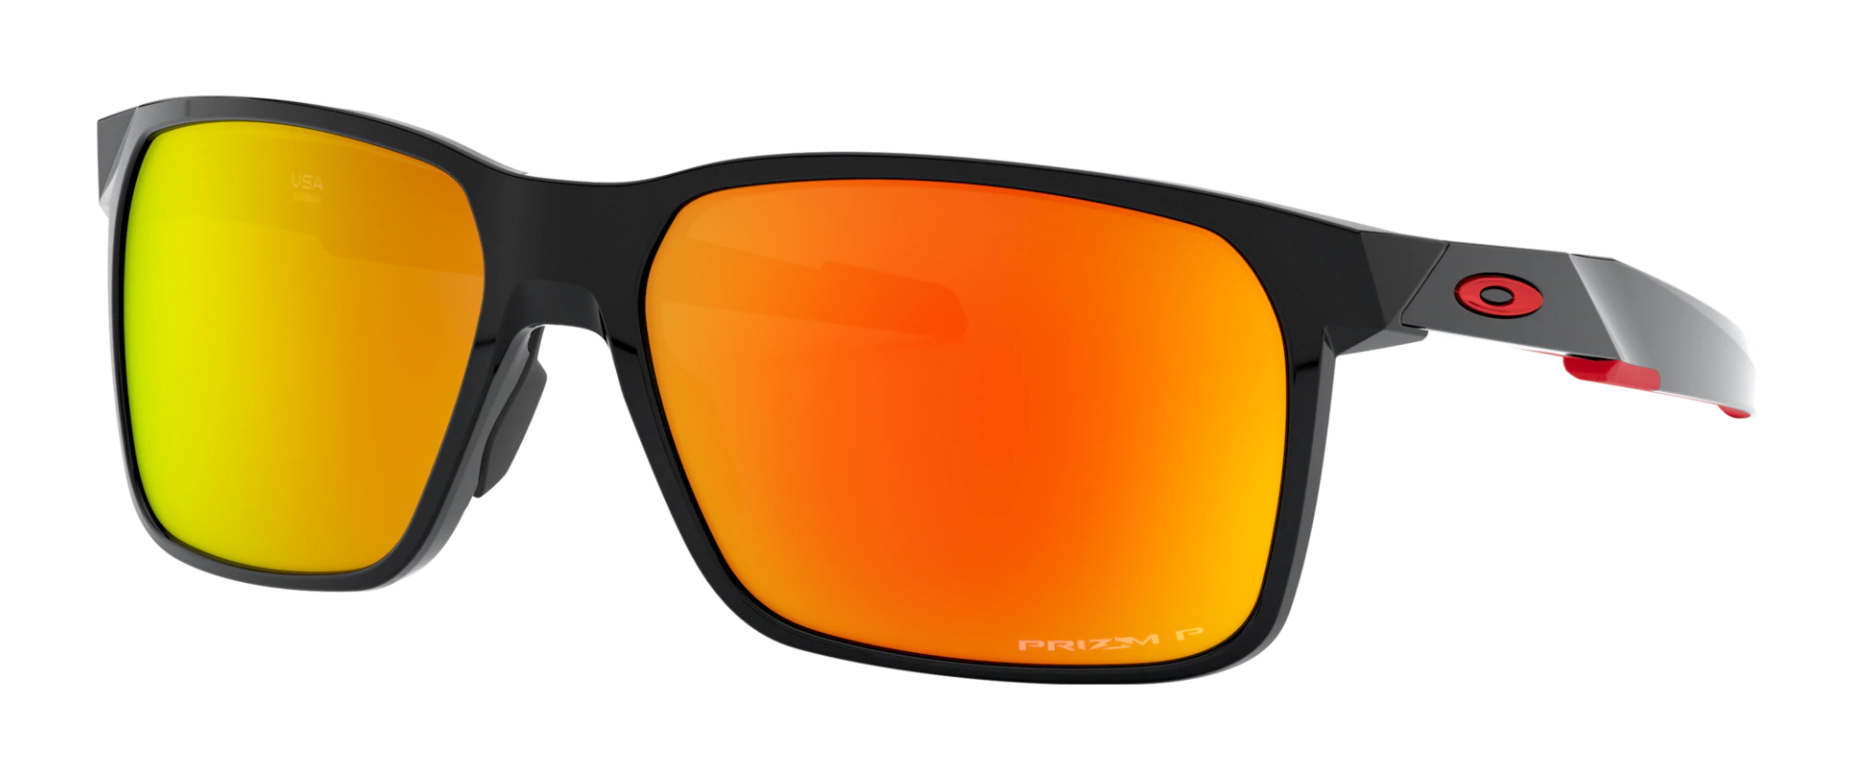 Best Oakley Sunglasses of 2021